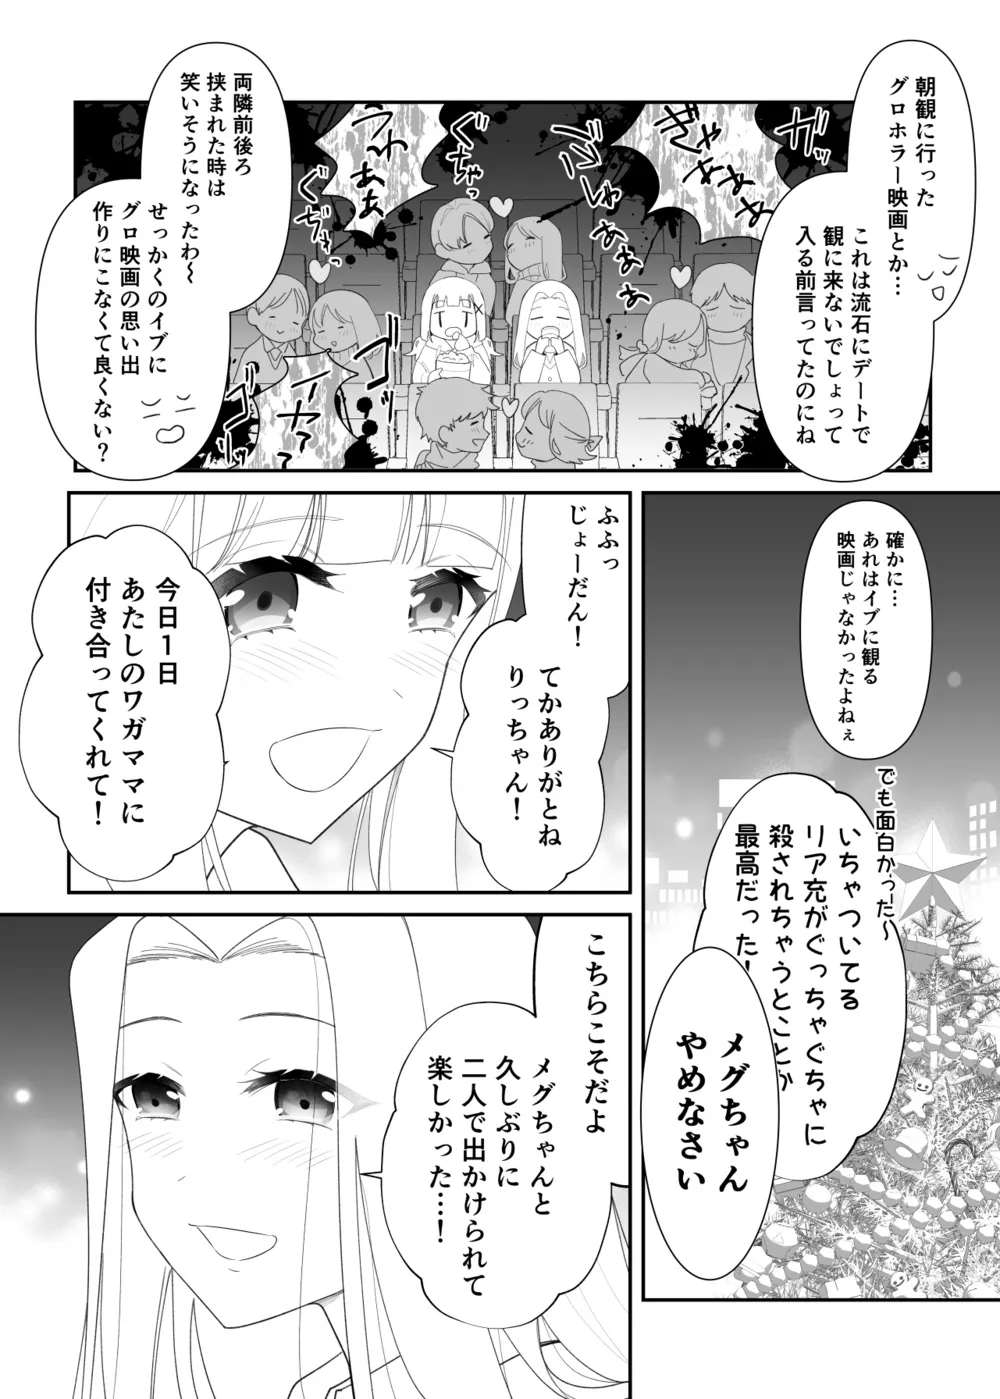 『拗らせ片想い幼馴染百合クリスマス漫画』(3/12)